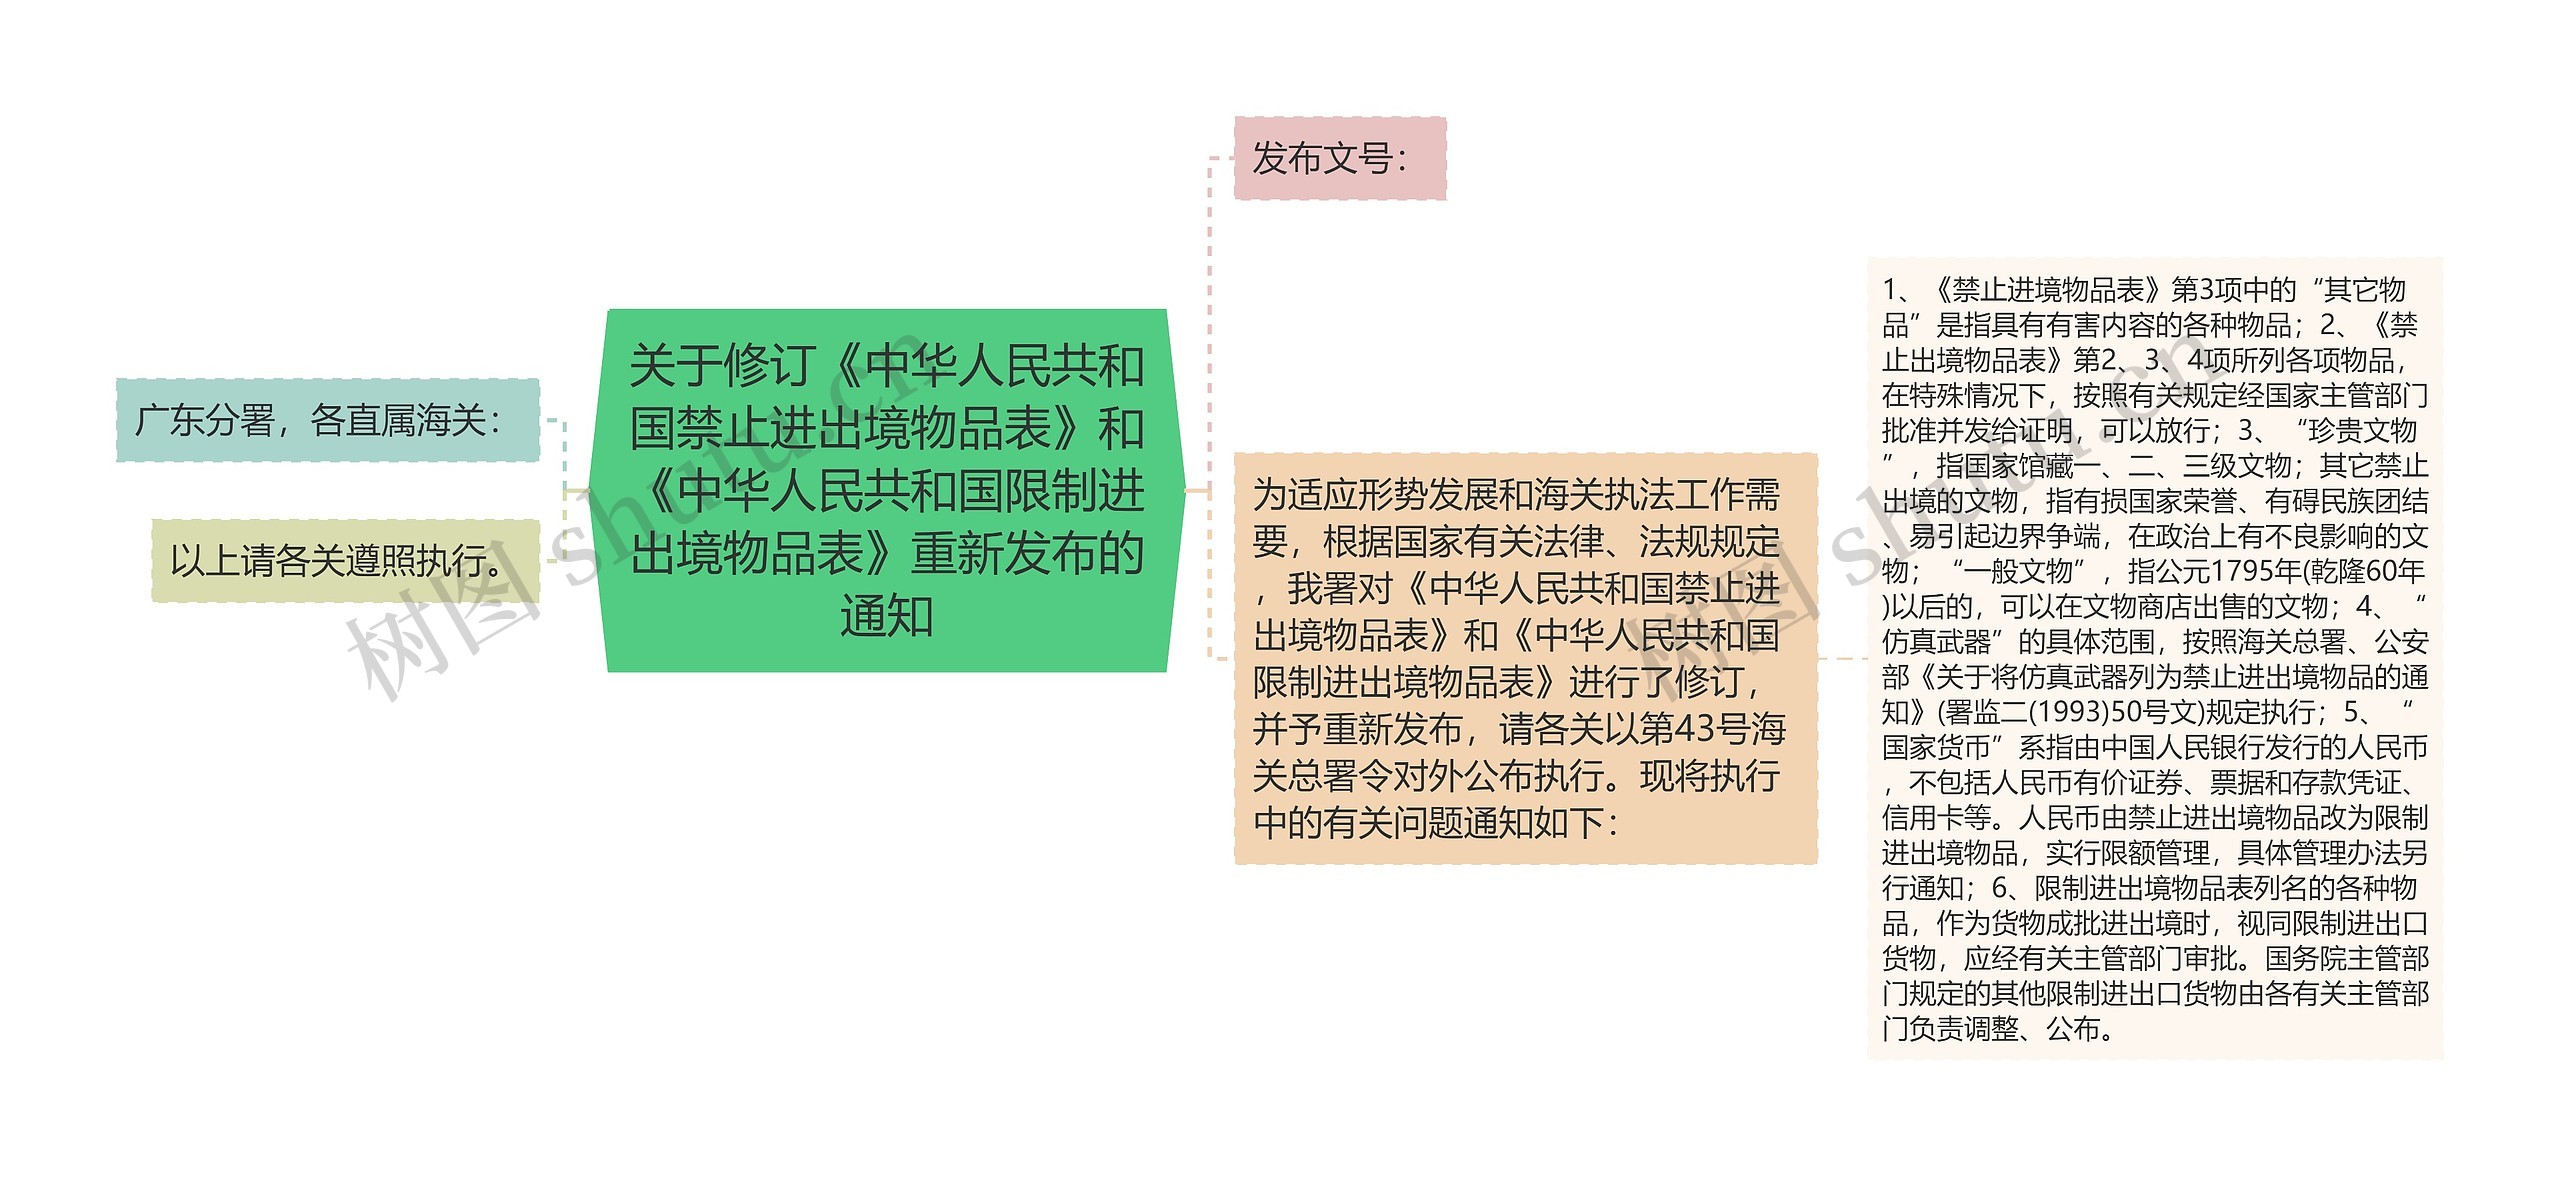 关于修订《中华人民共和国禁止进出境物品表》和《中华人民共和国限制进出境物品表》重新发布的通知